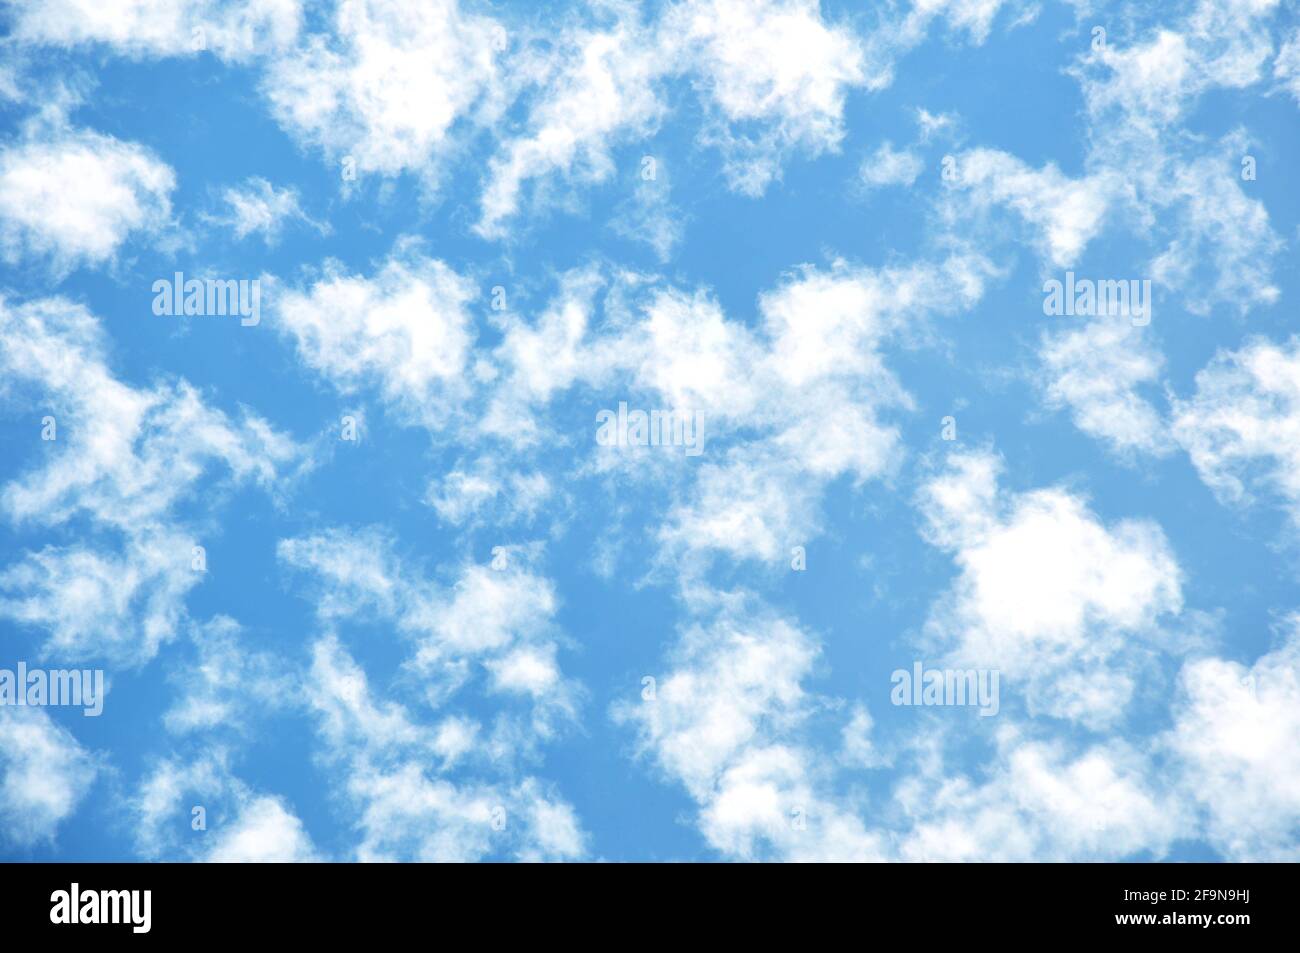 Vereinzelte Wolken auf blauem Himmel Hintergrund Stockfoto